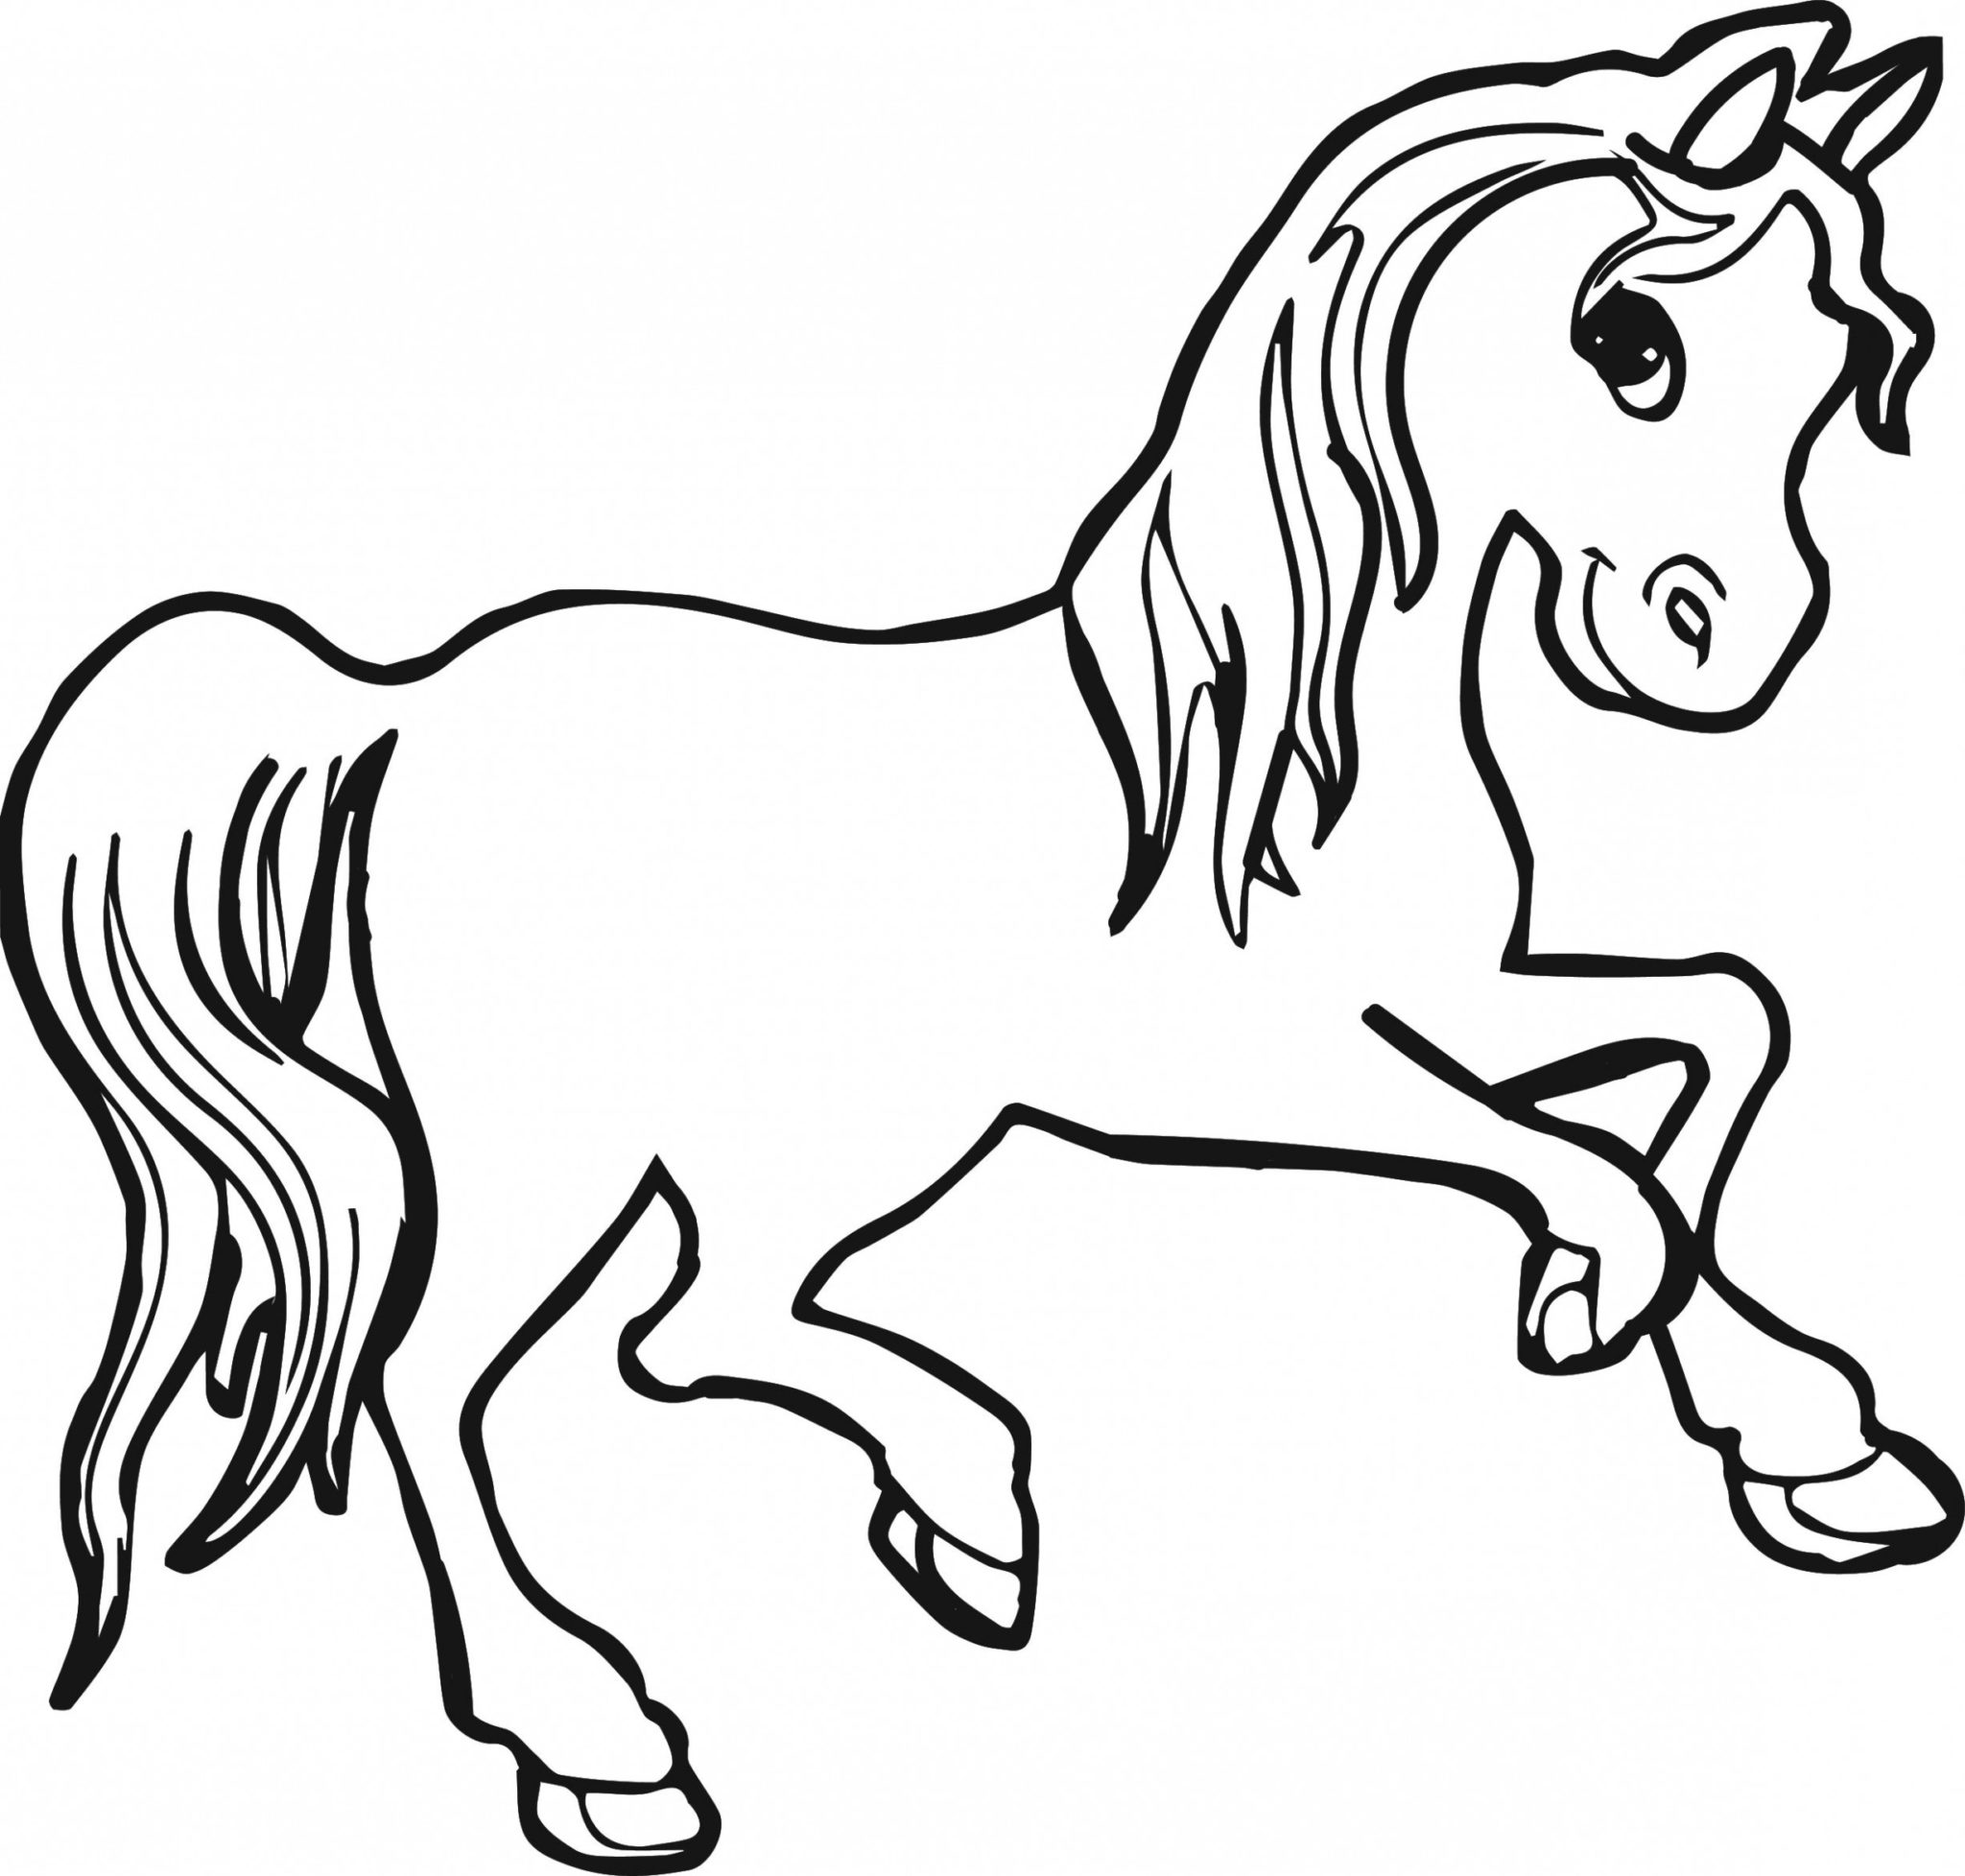 Bộ sưu tập tranh tô màu con ngựa dành cho các bé yêu động vật